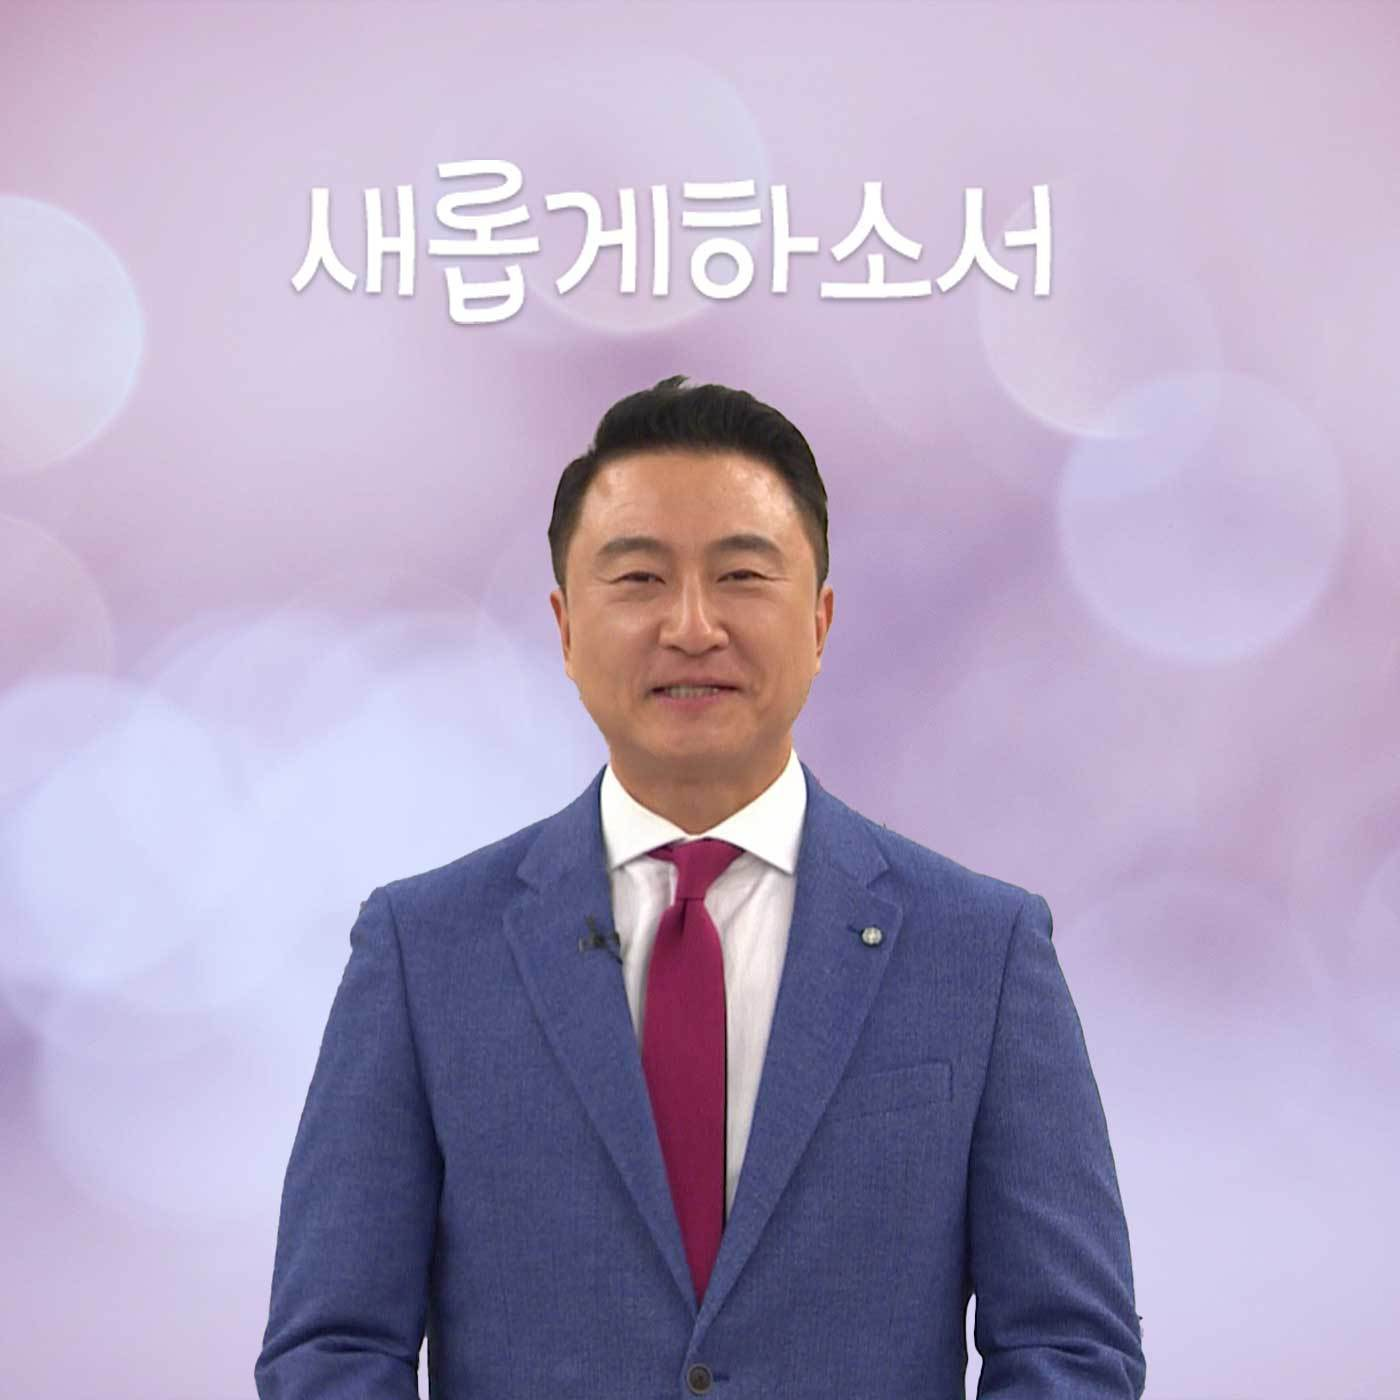 [22.10.24] 내 아픔 아시는 당신께 (feat. 하나님) - 조하문 목사